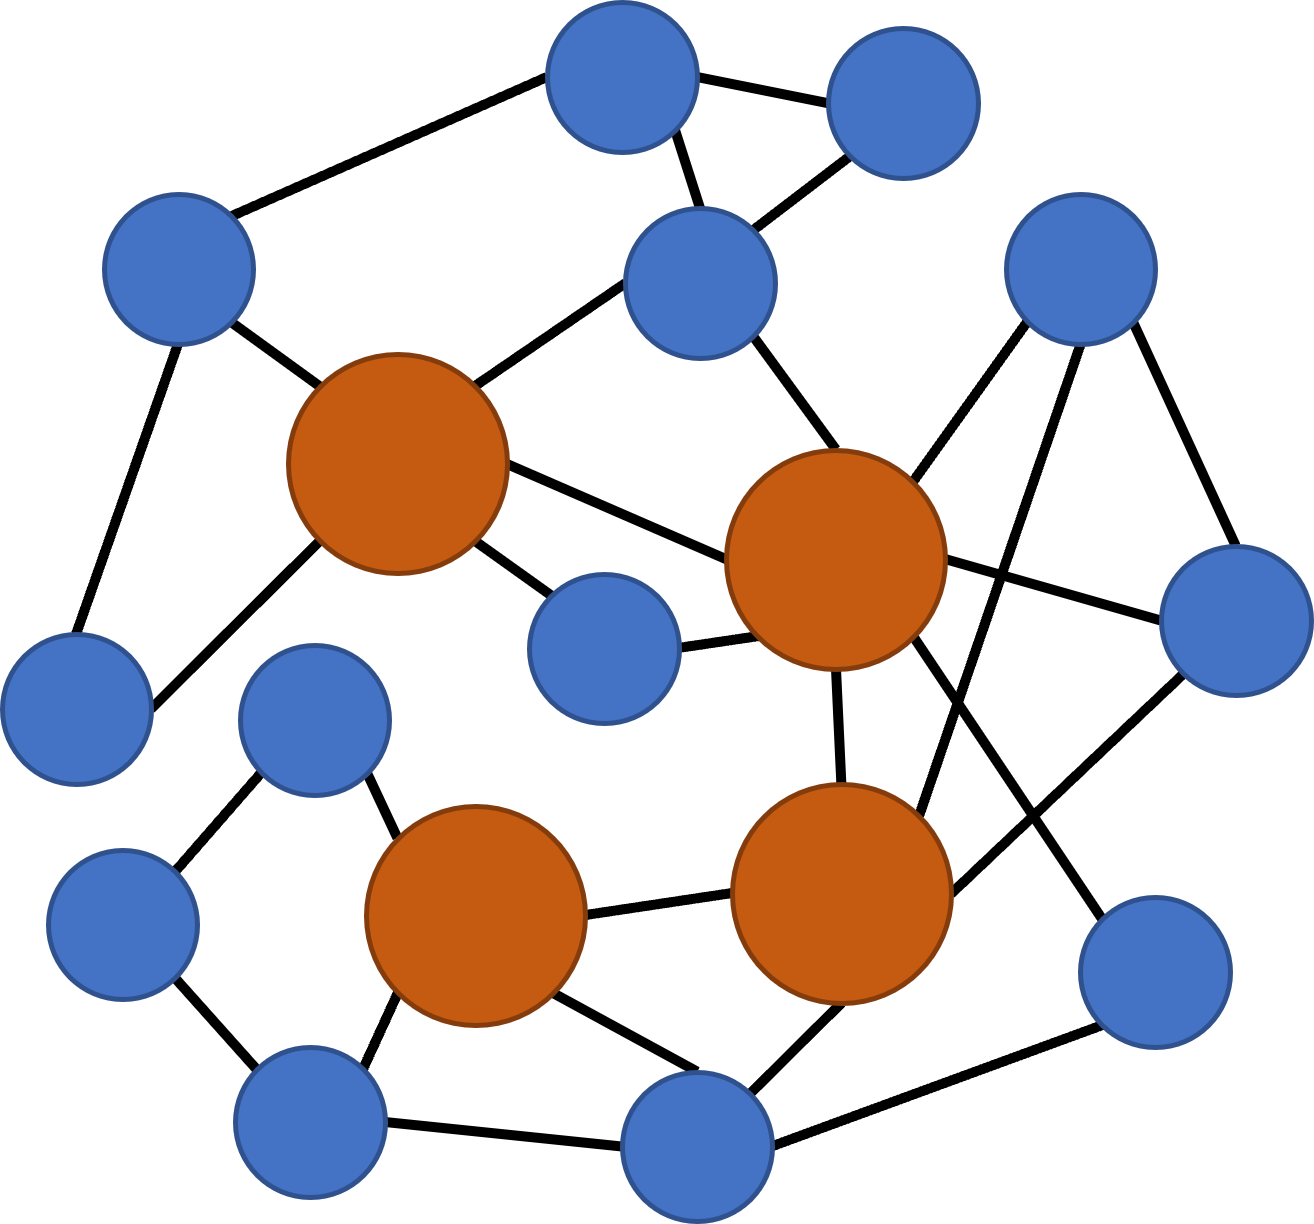 將開放世界遊戲中的關卡地點抽象為由線段（流程路徑）相連的節點，遊戲的流程便可以被映射成數學中的圖（graph）。具體而言，圖中橙色的圓圈（節點）為主線劇情相關的關卡，而藍色的圓圈（節點）則為支線劇情相關的關卡。